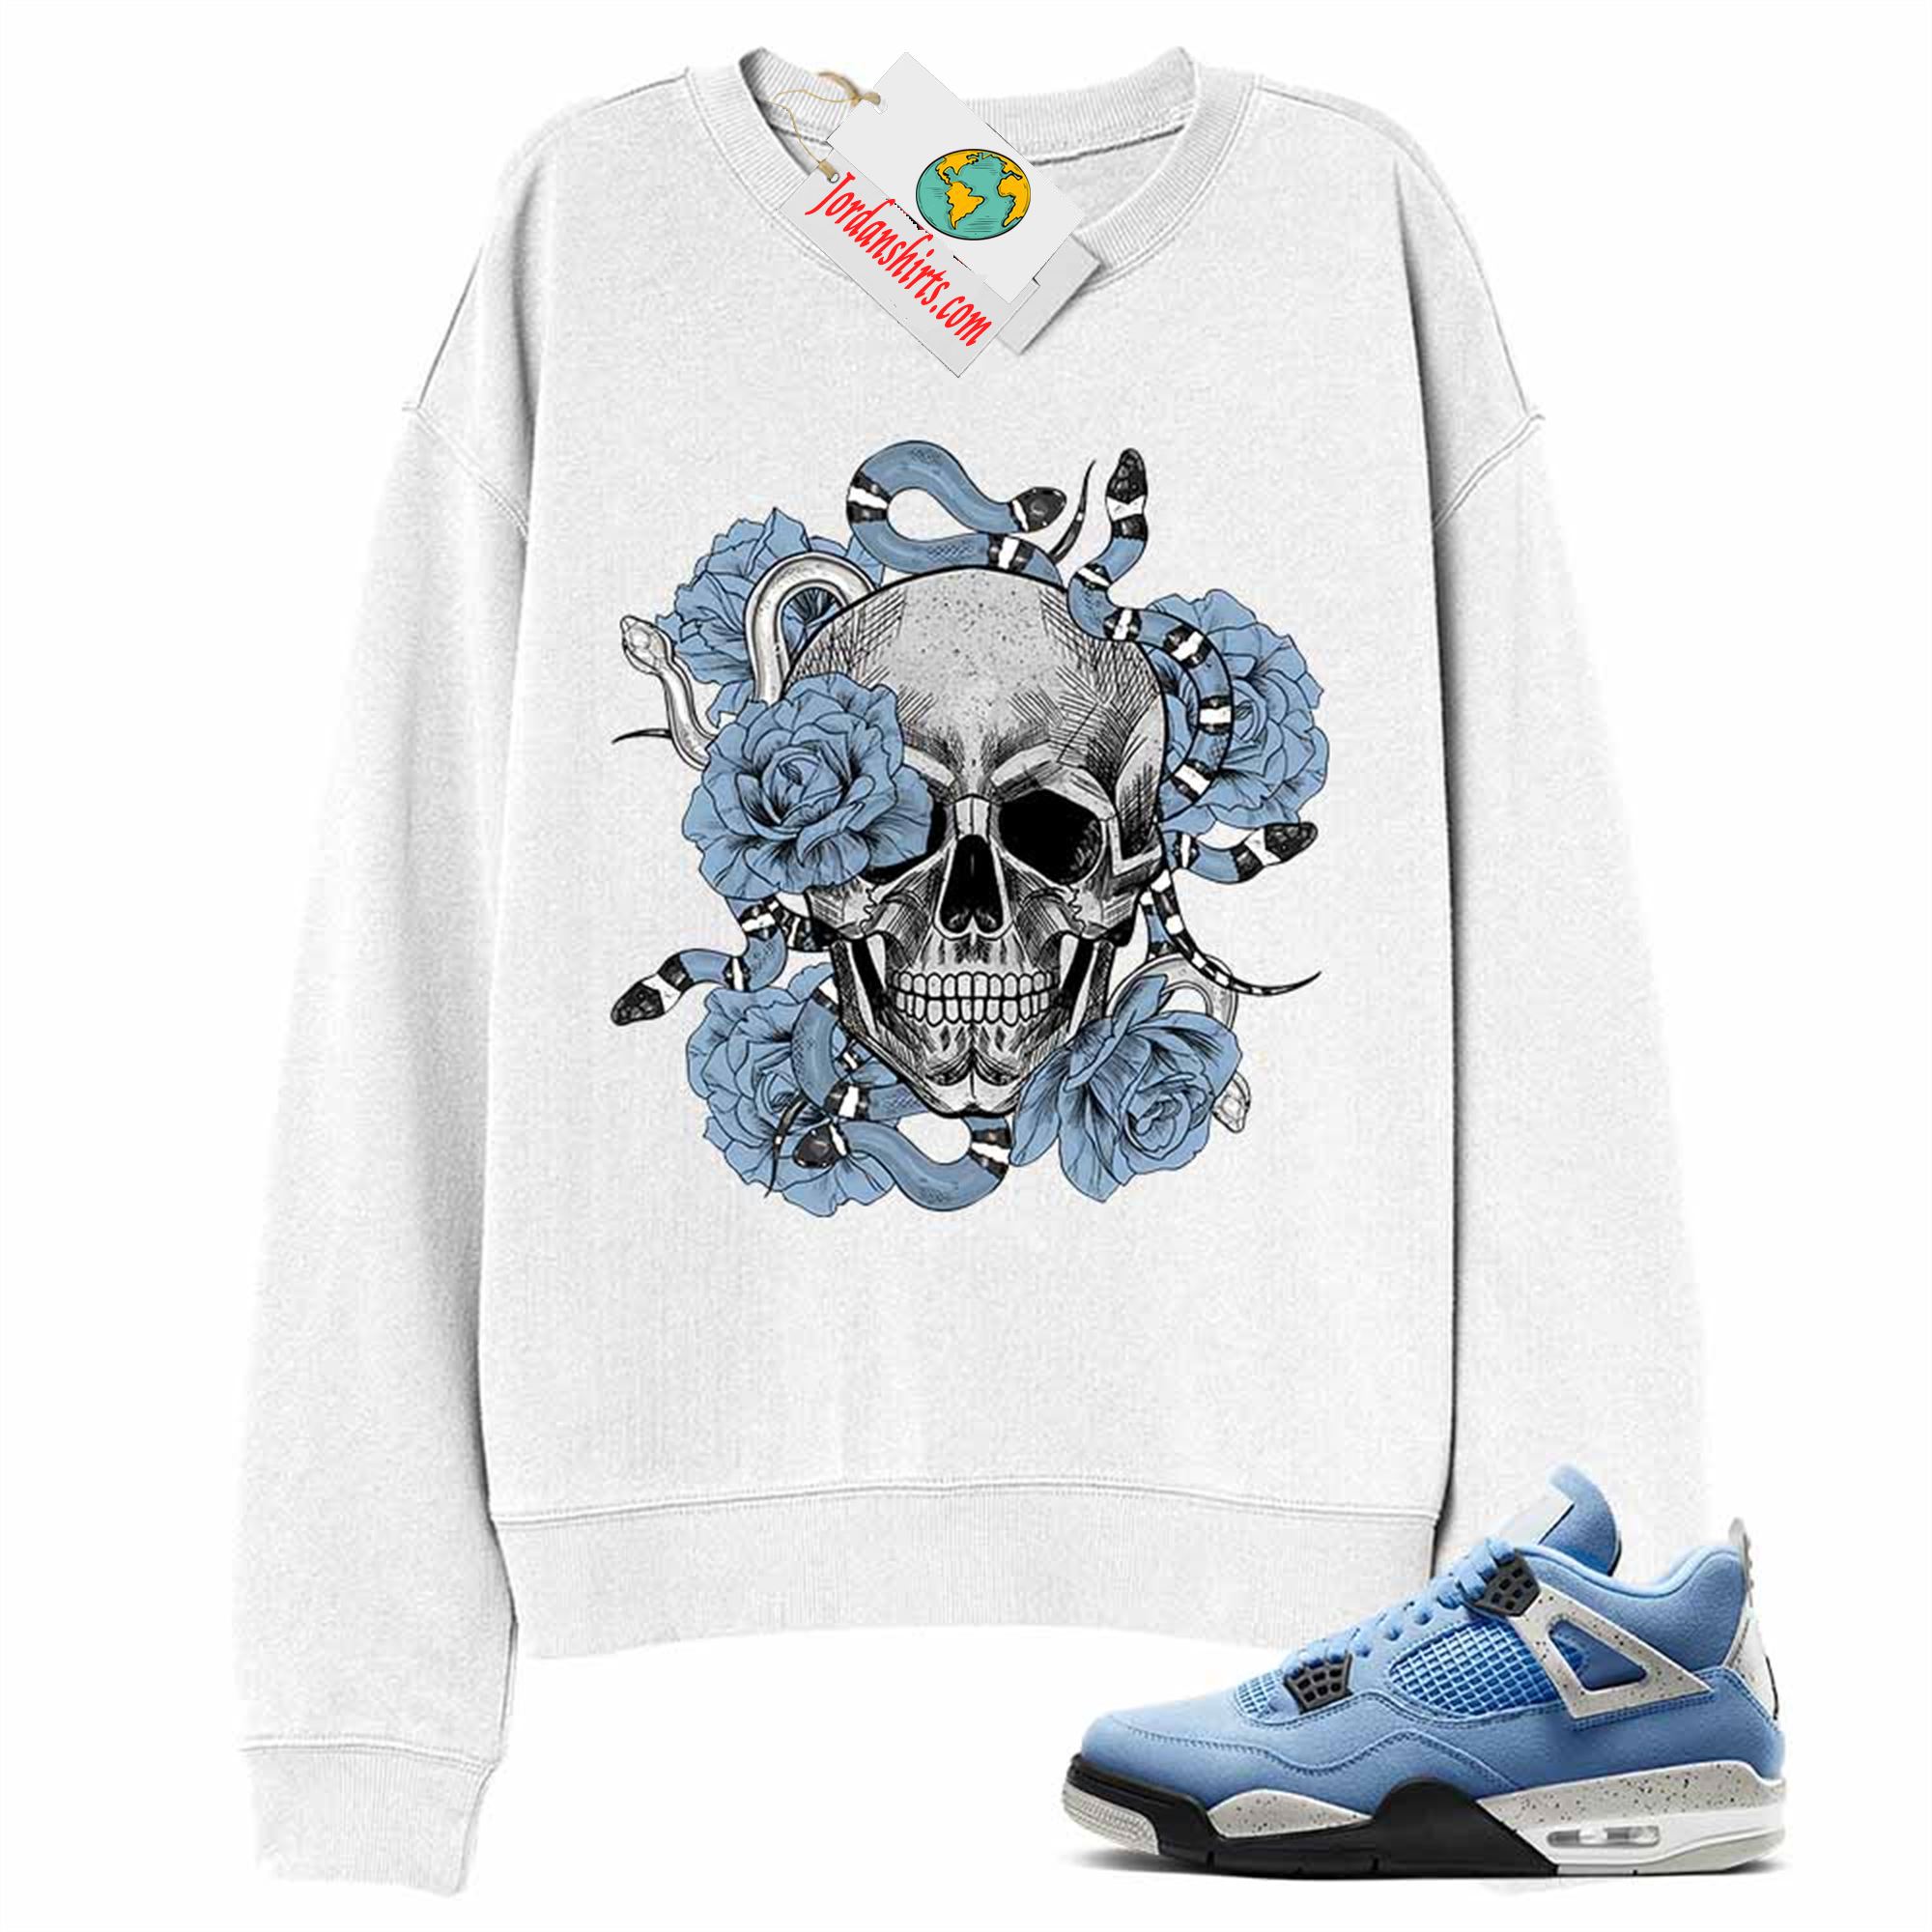 Jordan 4 Sweatshirt, Snake Skull Rose White Sweatshirt Air Jordan 4 University Blue 4s-trungten-9fn2g Size Up To 5xl